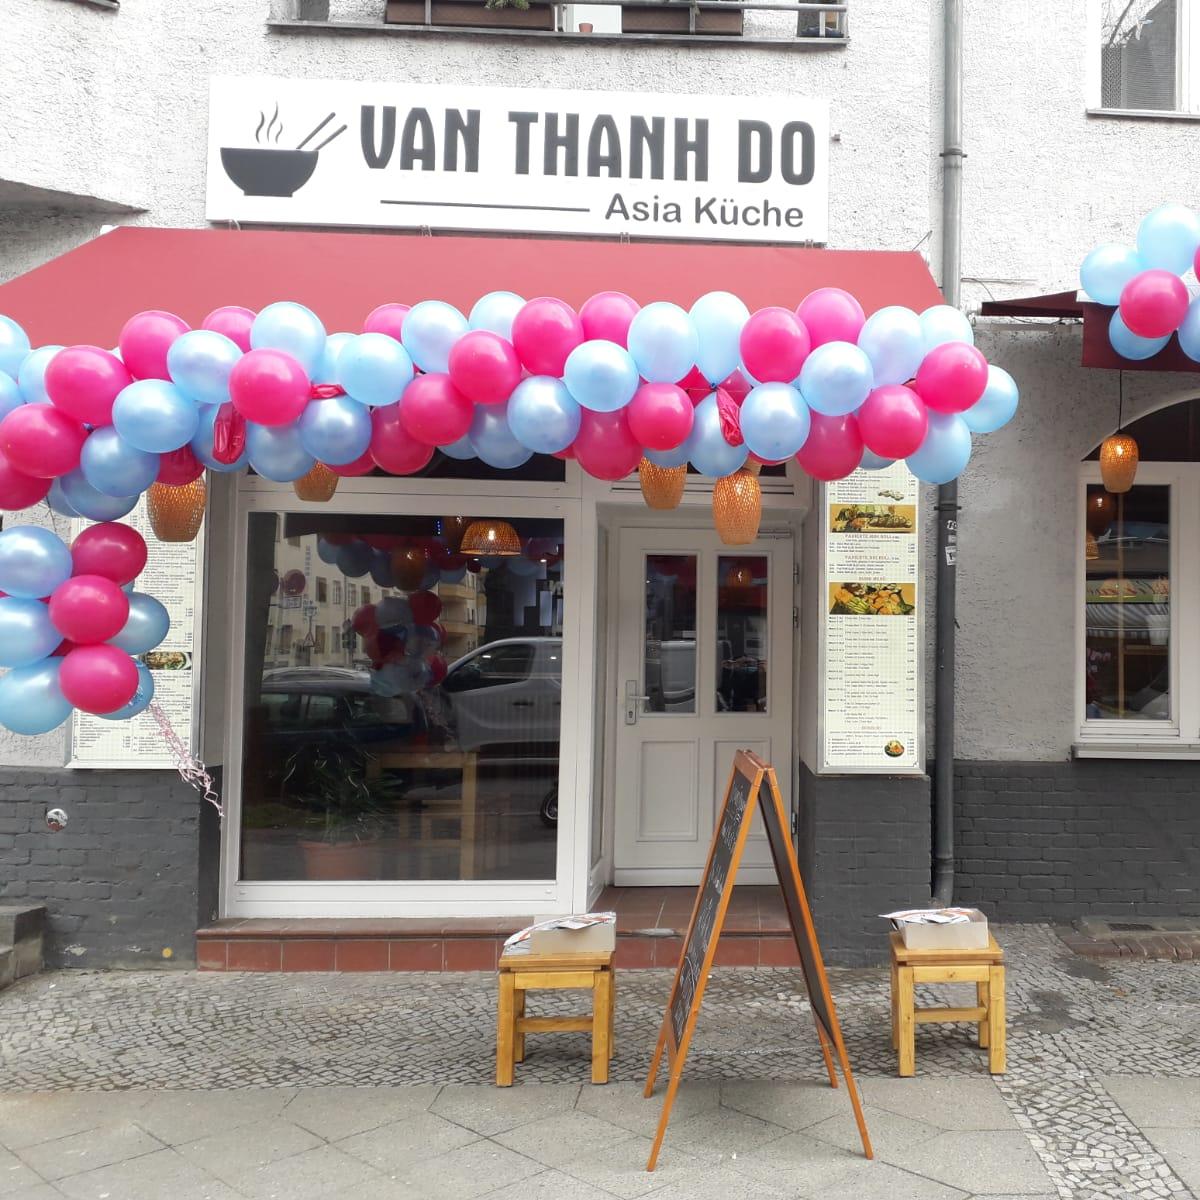 Restaurant "Van Thanh Do" in Berlin